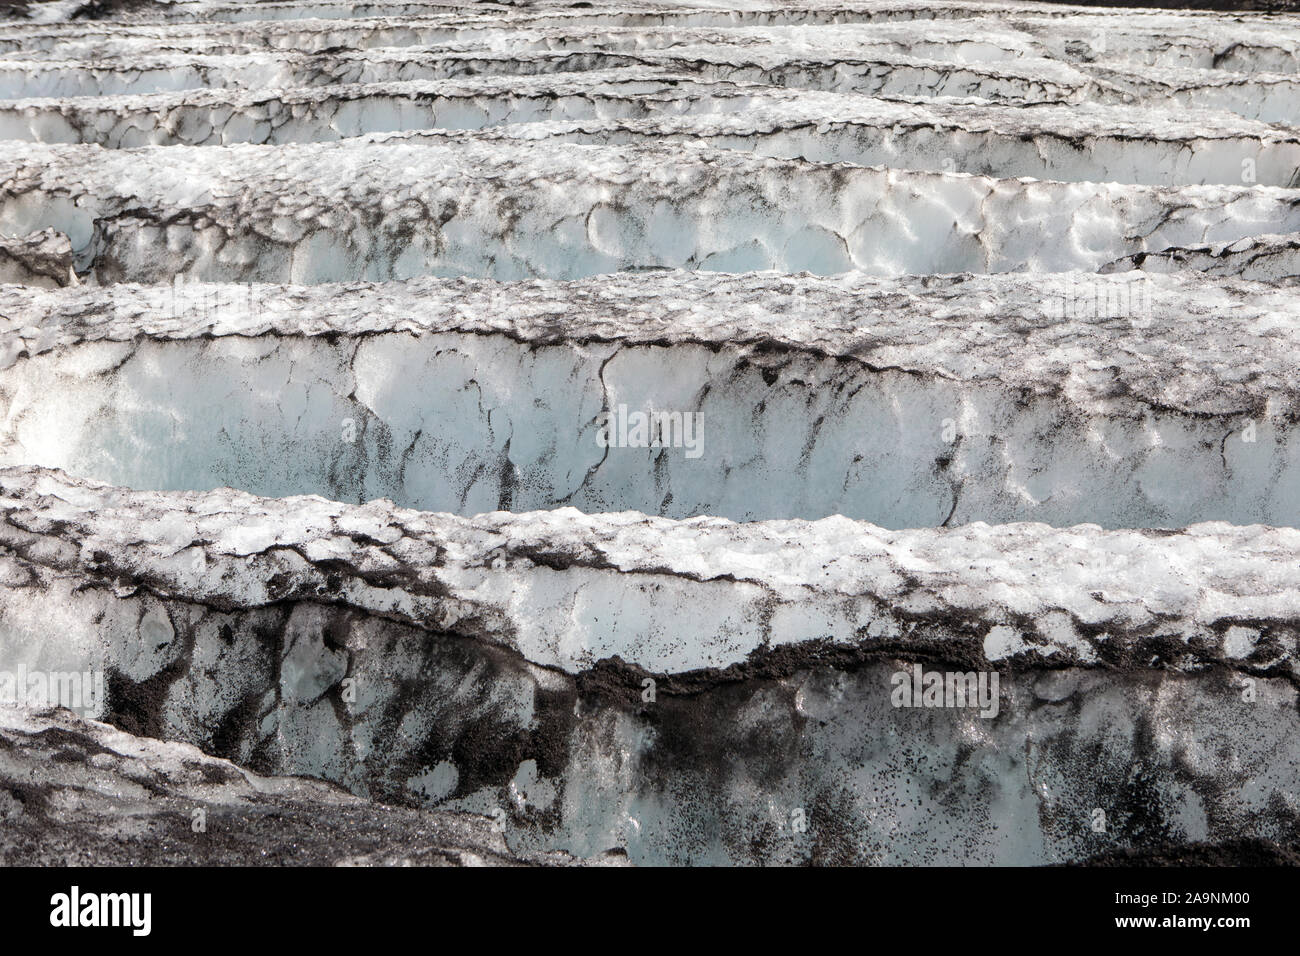 Myrdalsjokull glacier, South Iceland Stock Photo